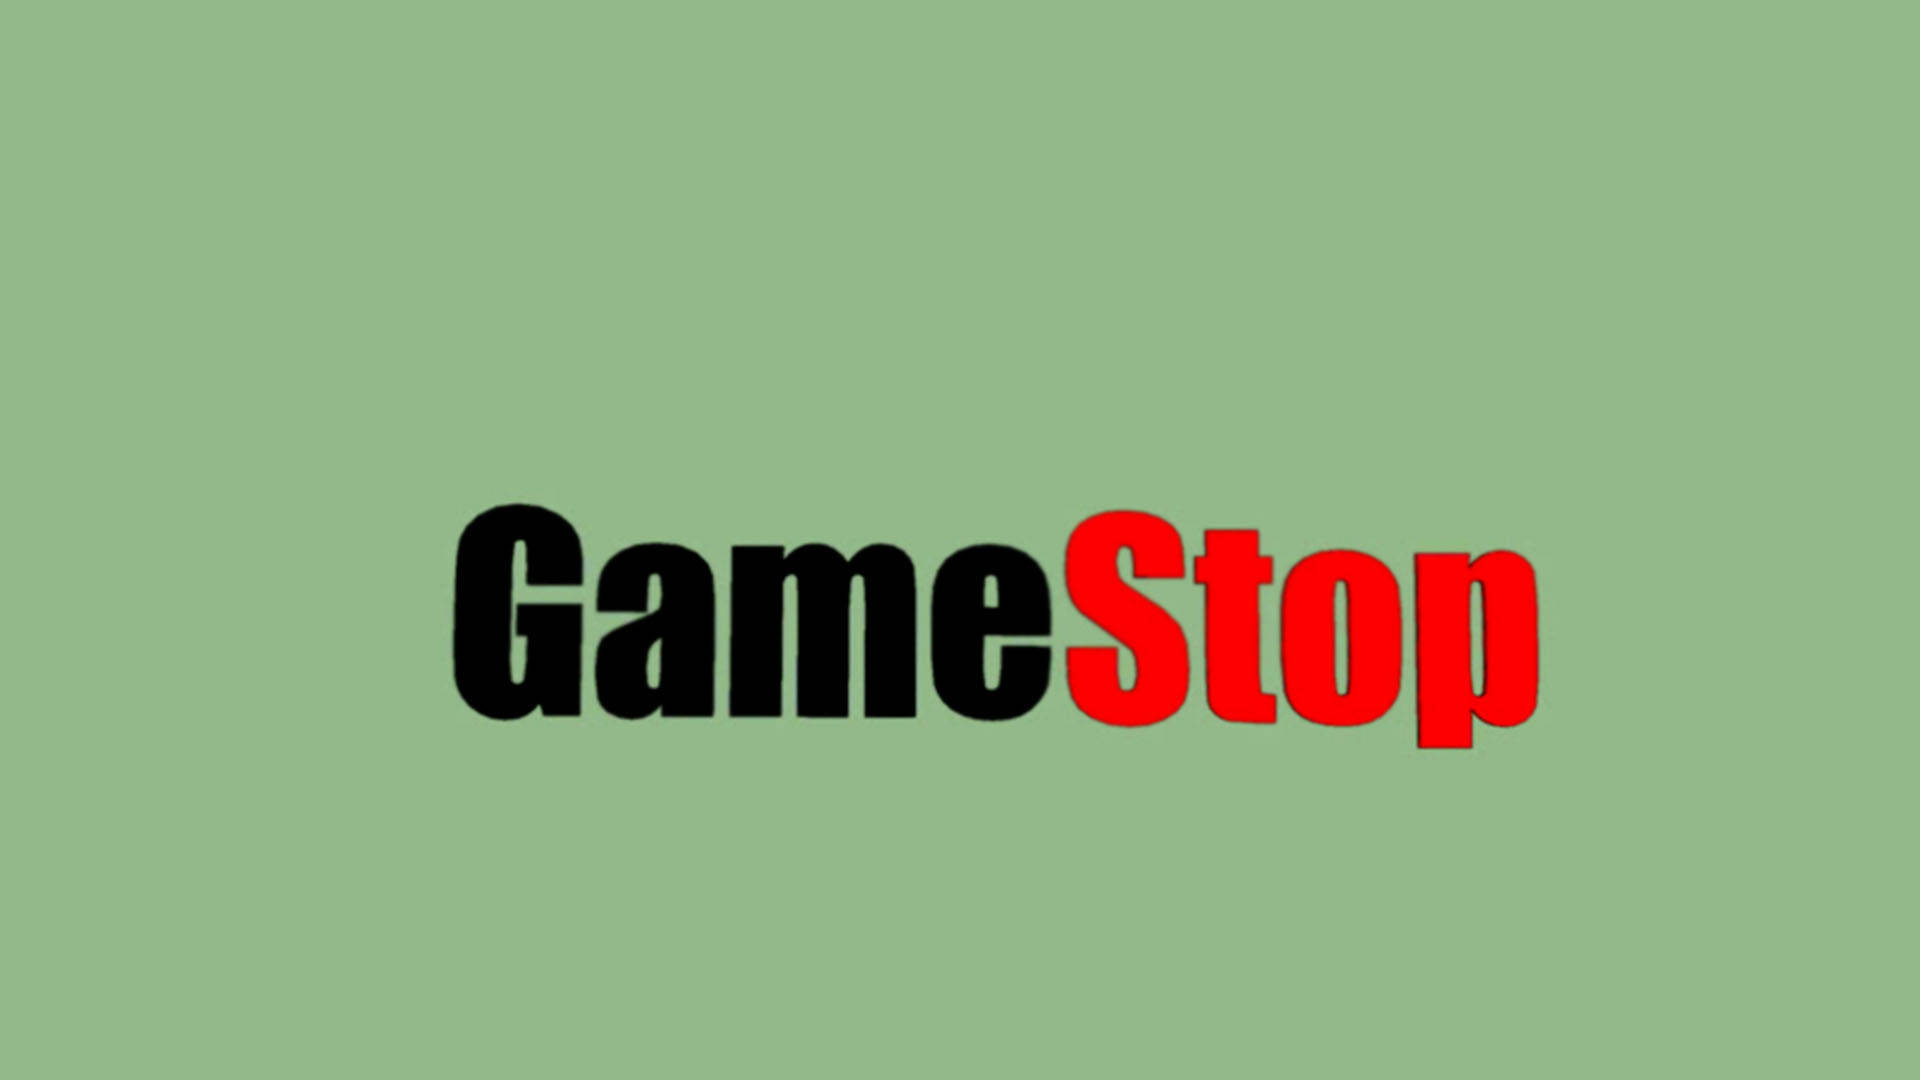 GameStop In Green Background